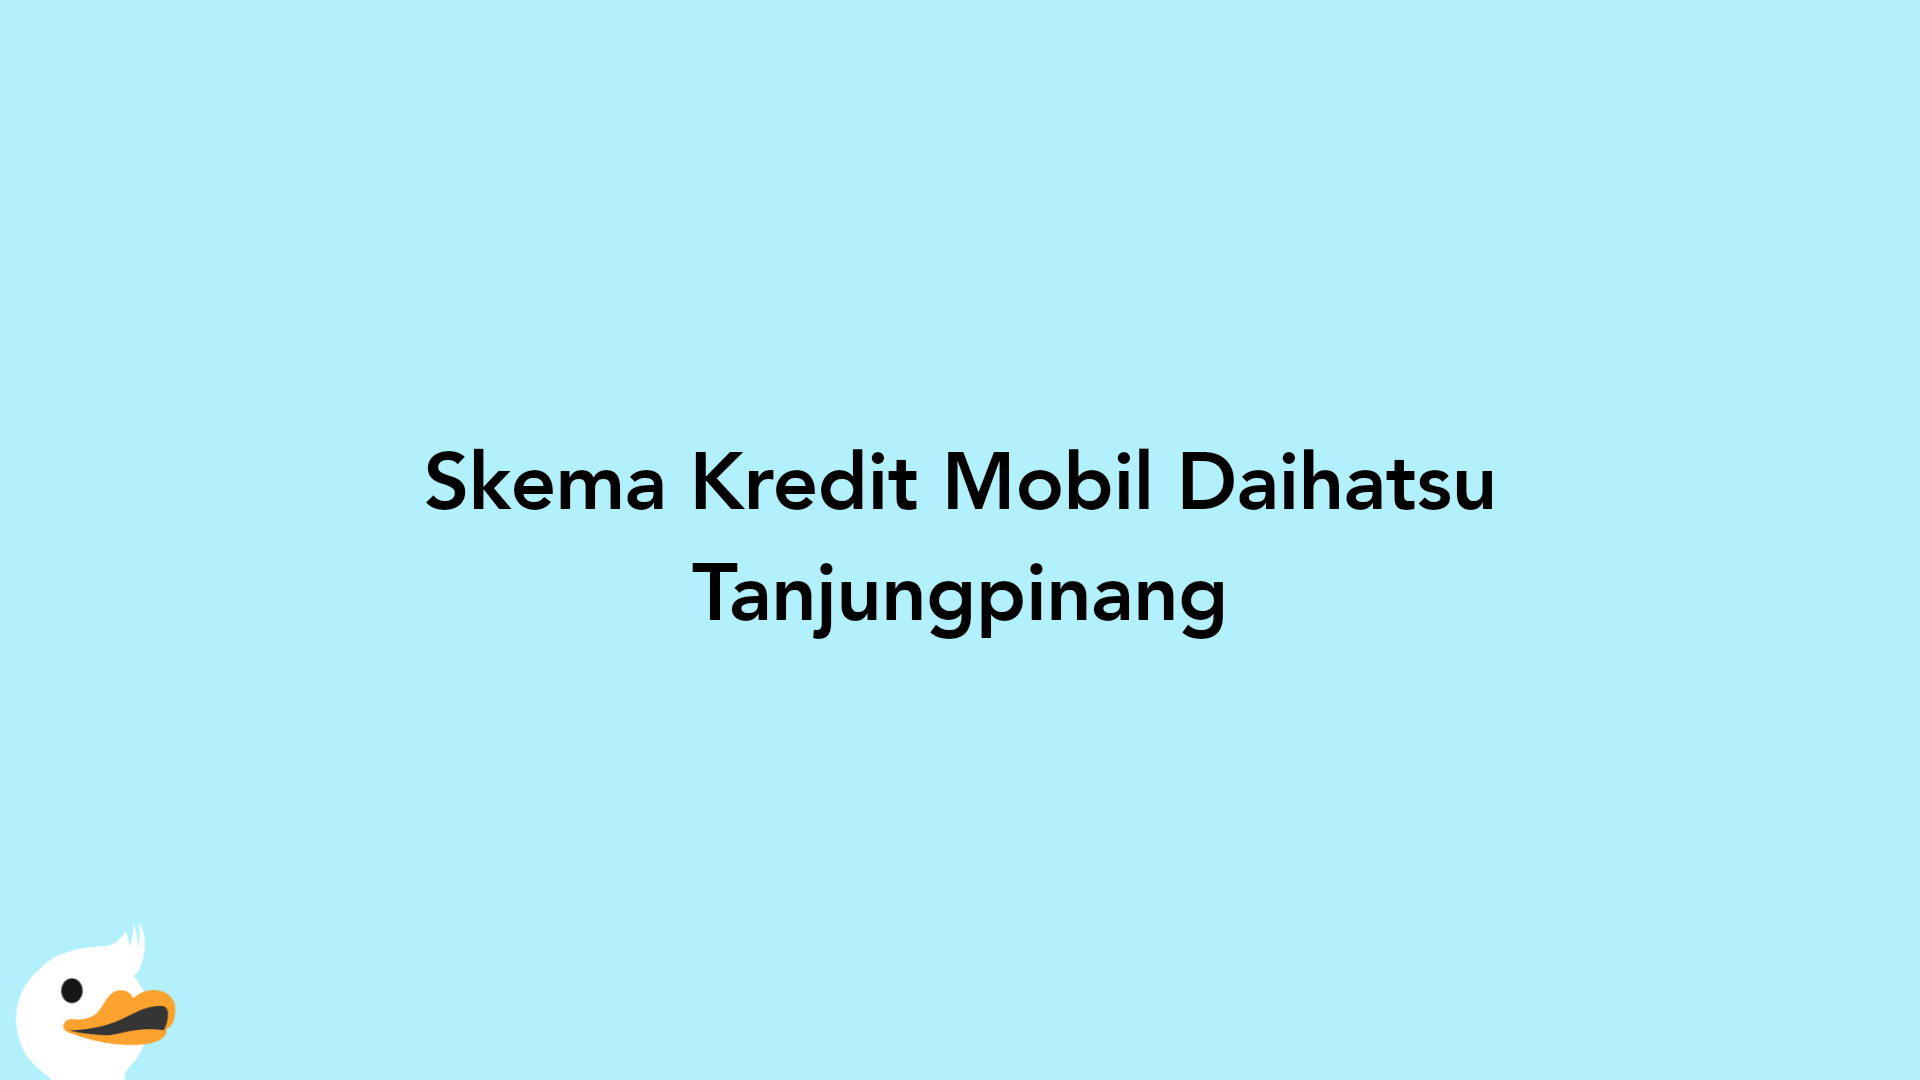 Skema Kredit Mobil Daihatsu Tanjungpinang